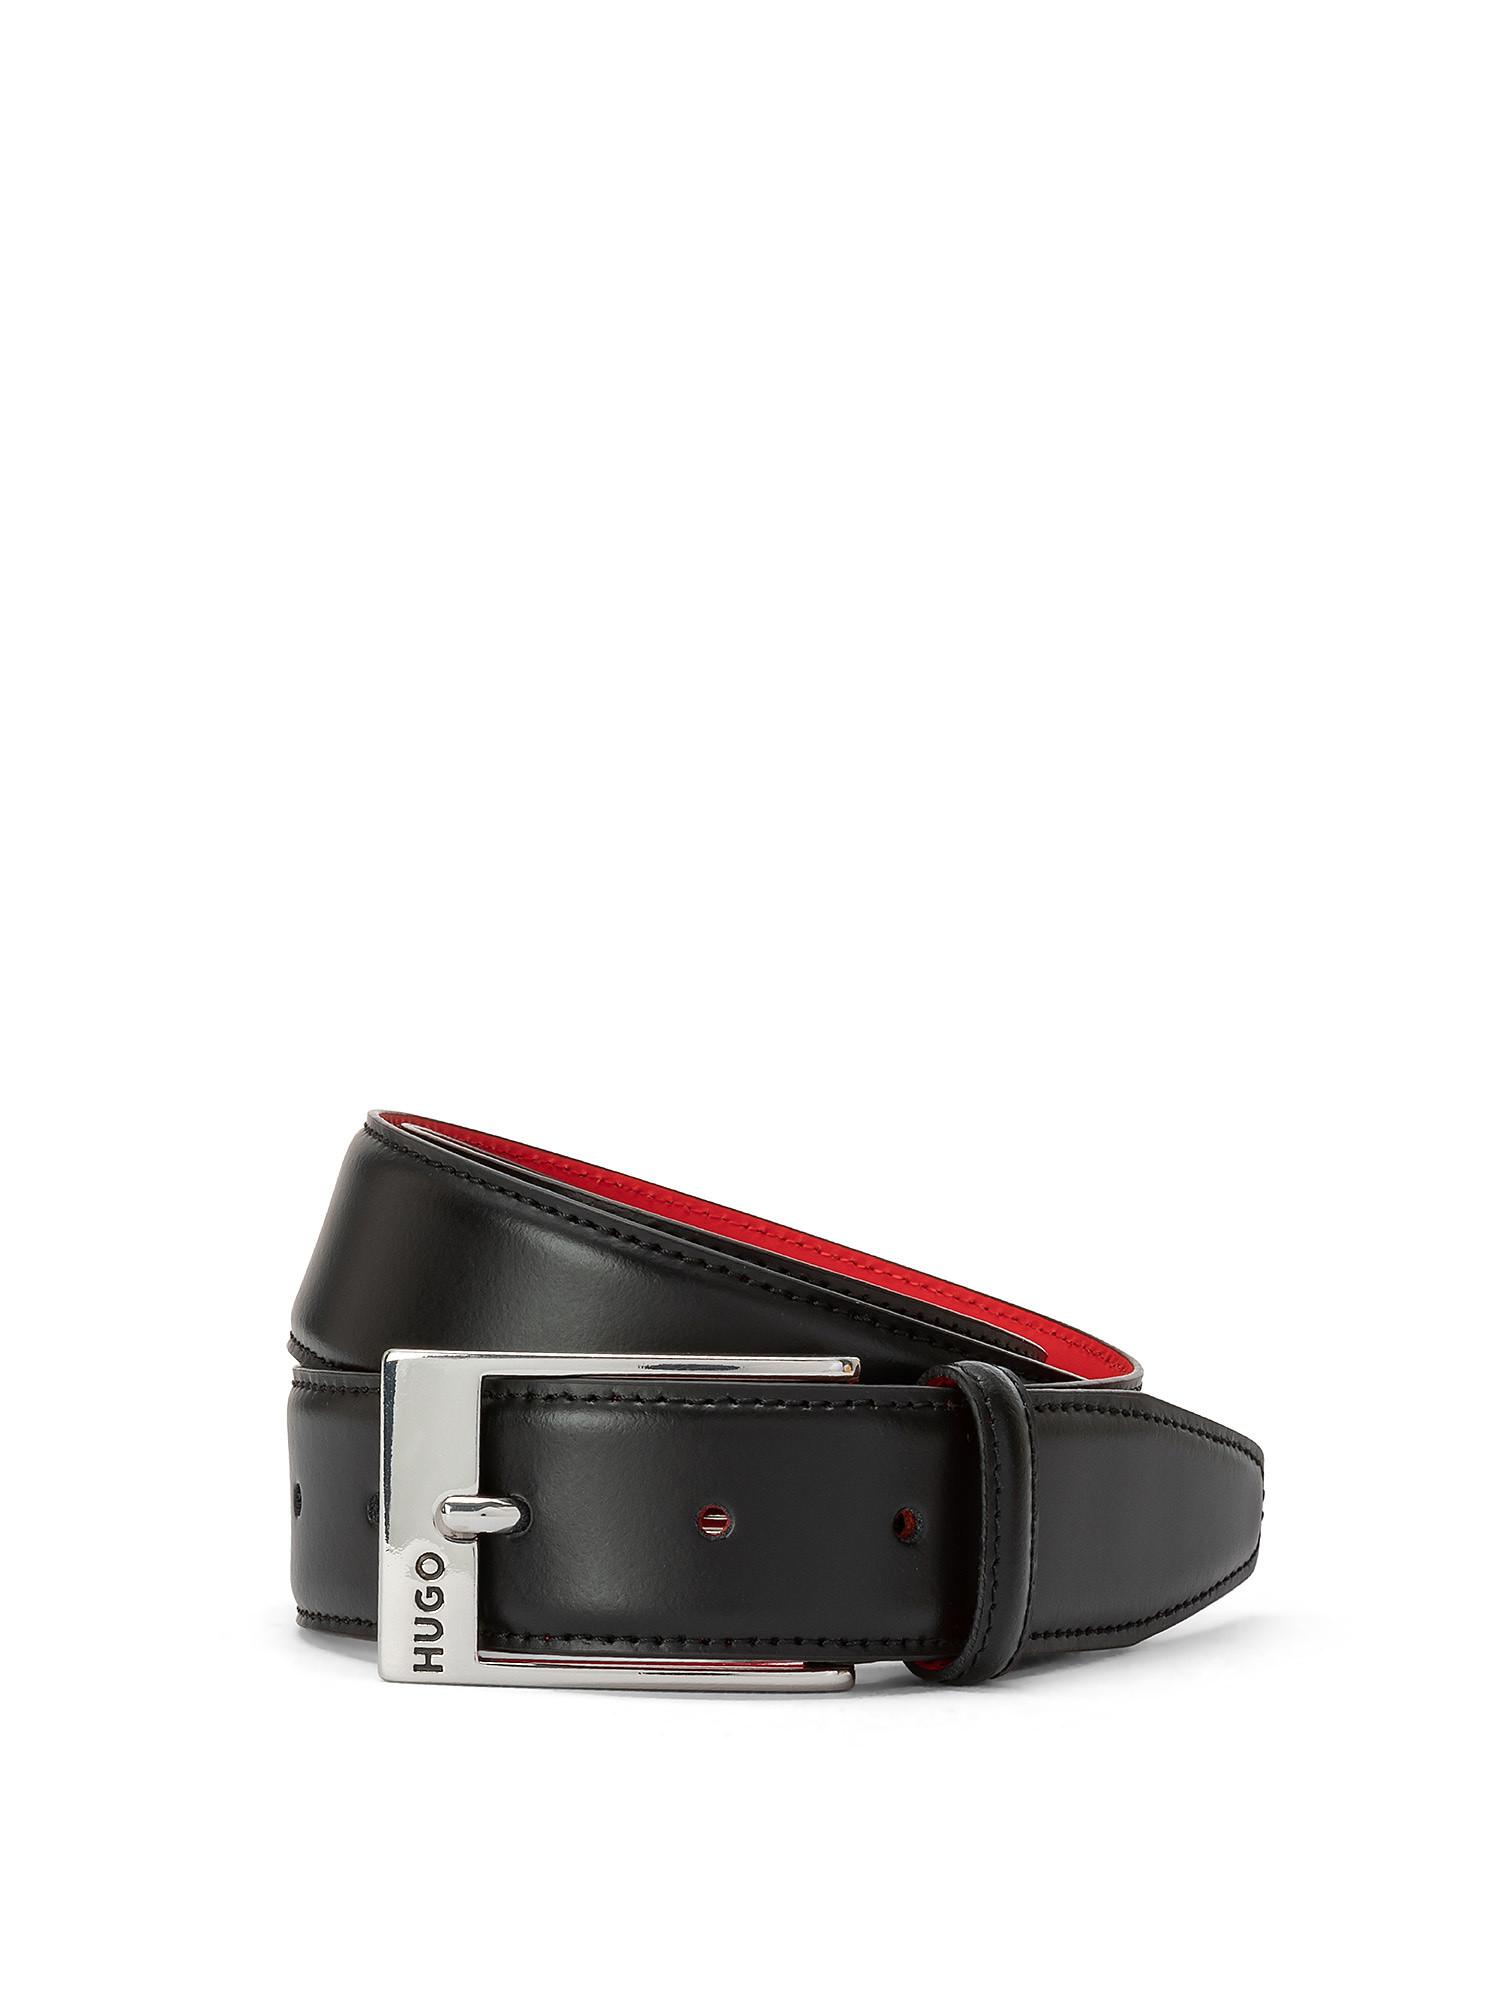 Hugo - Leather belt, Black, large image number 0